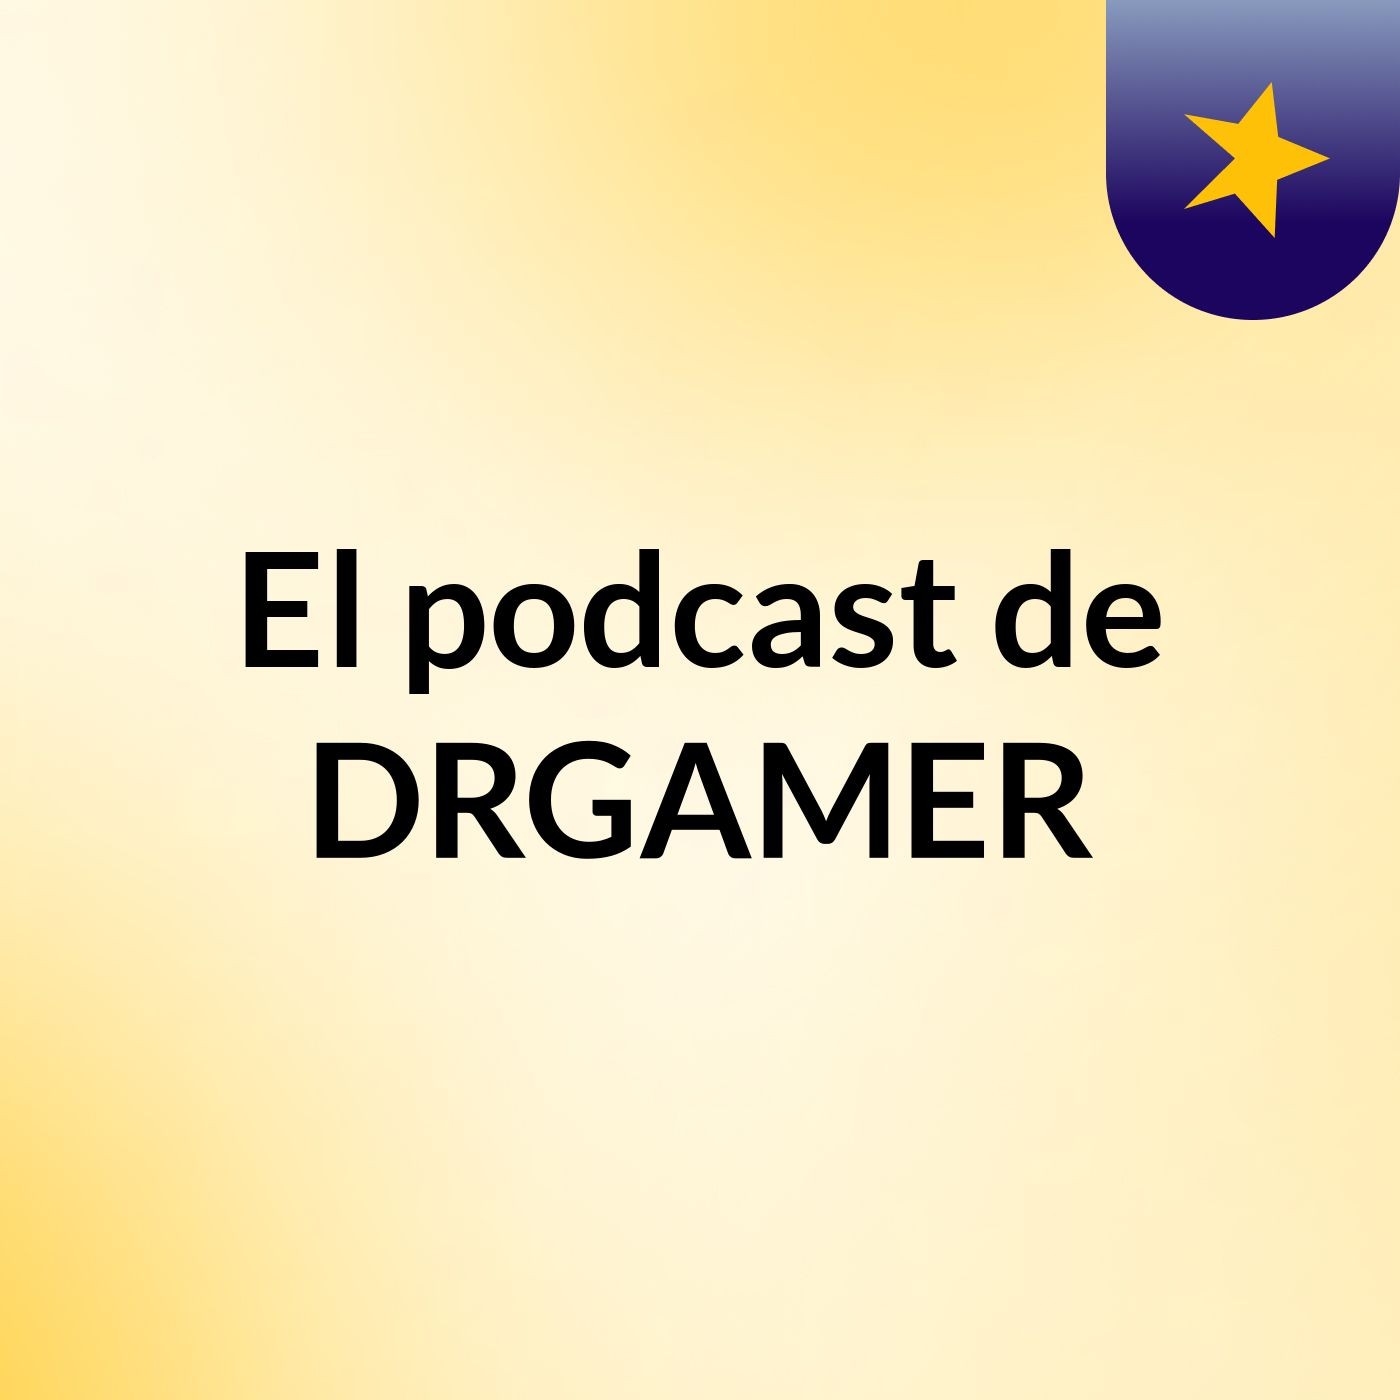 El podcast de DRGAMER